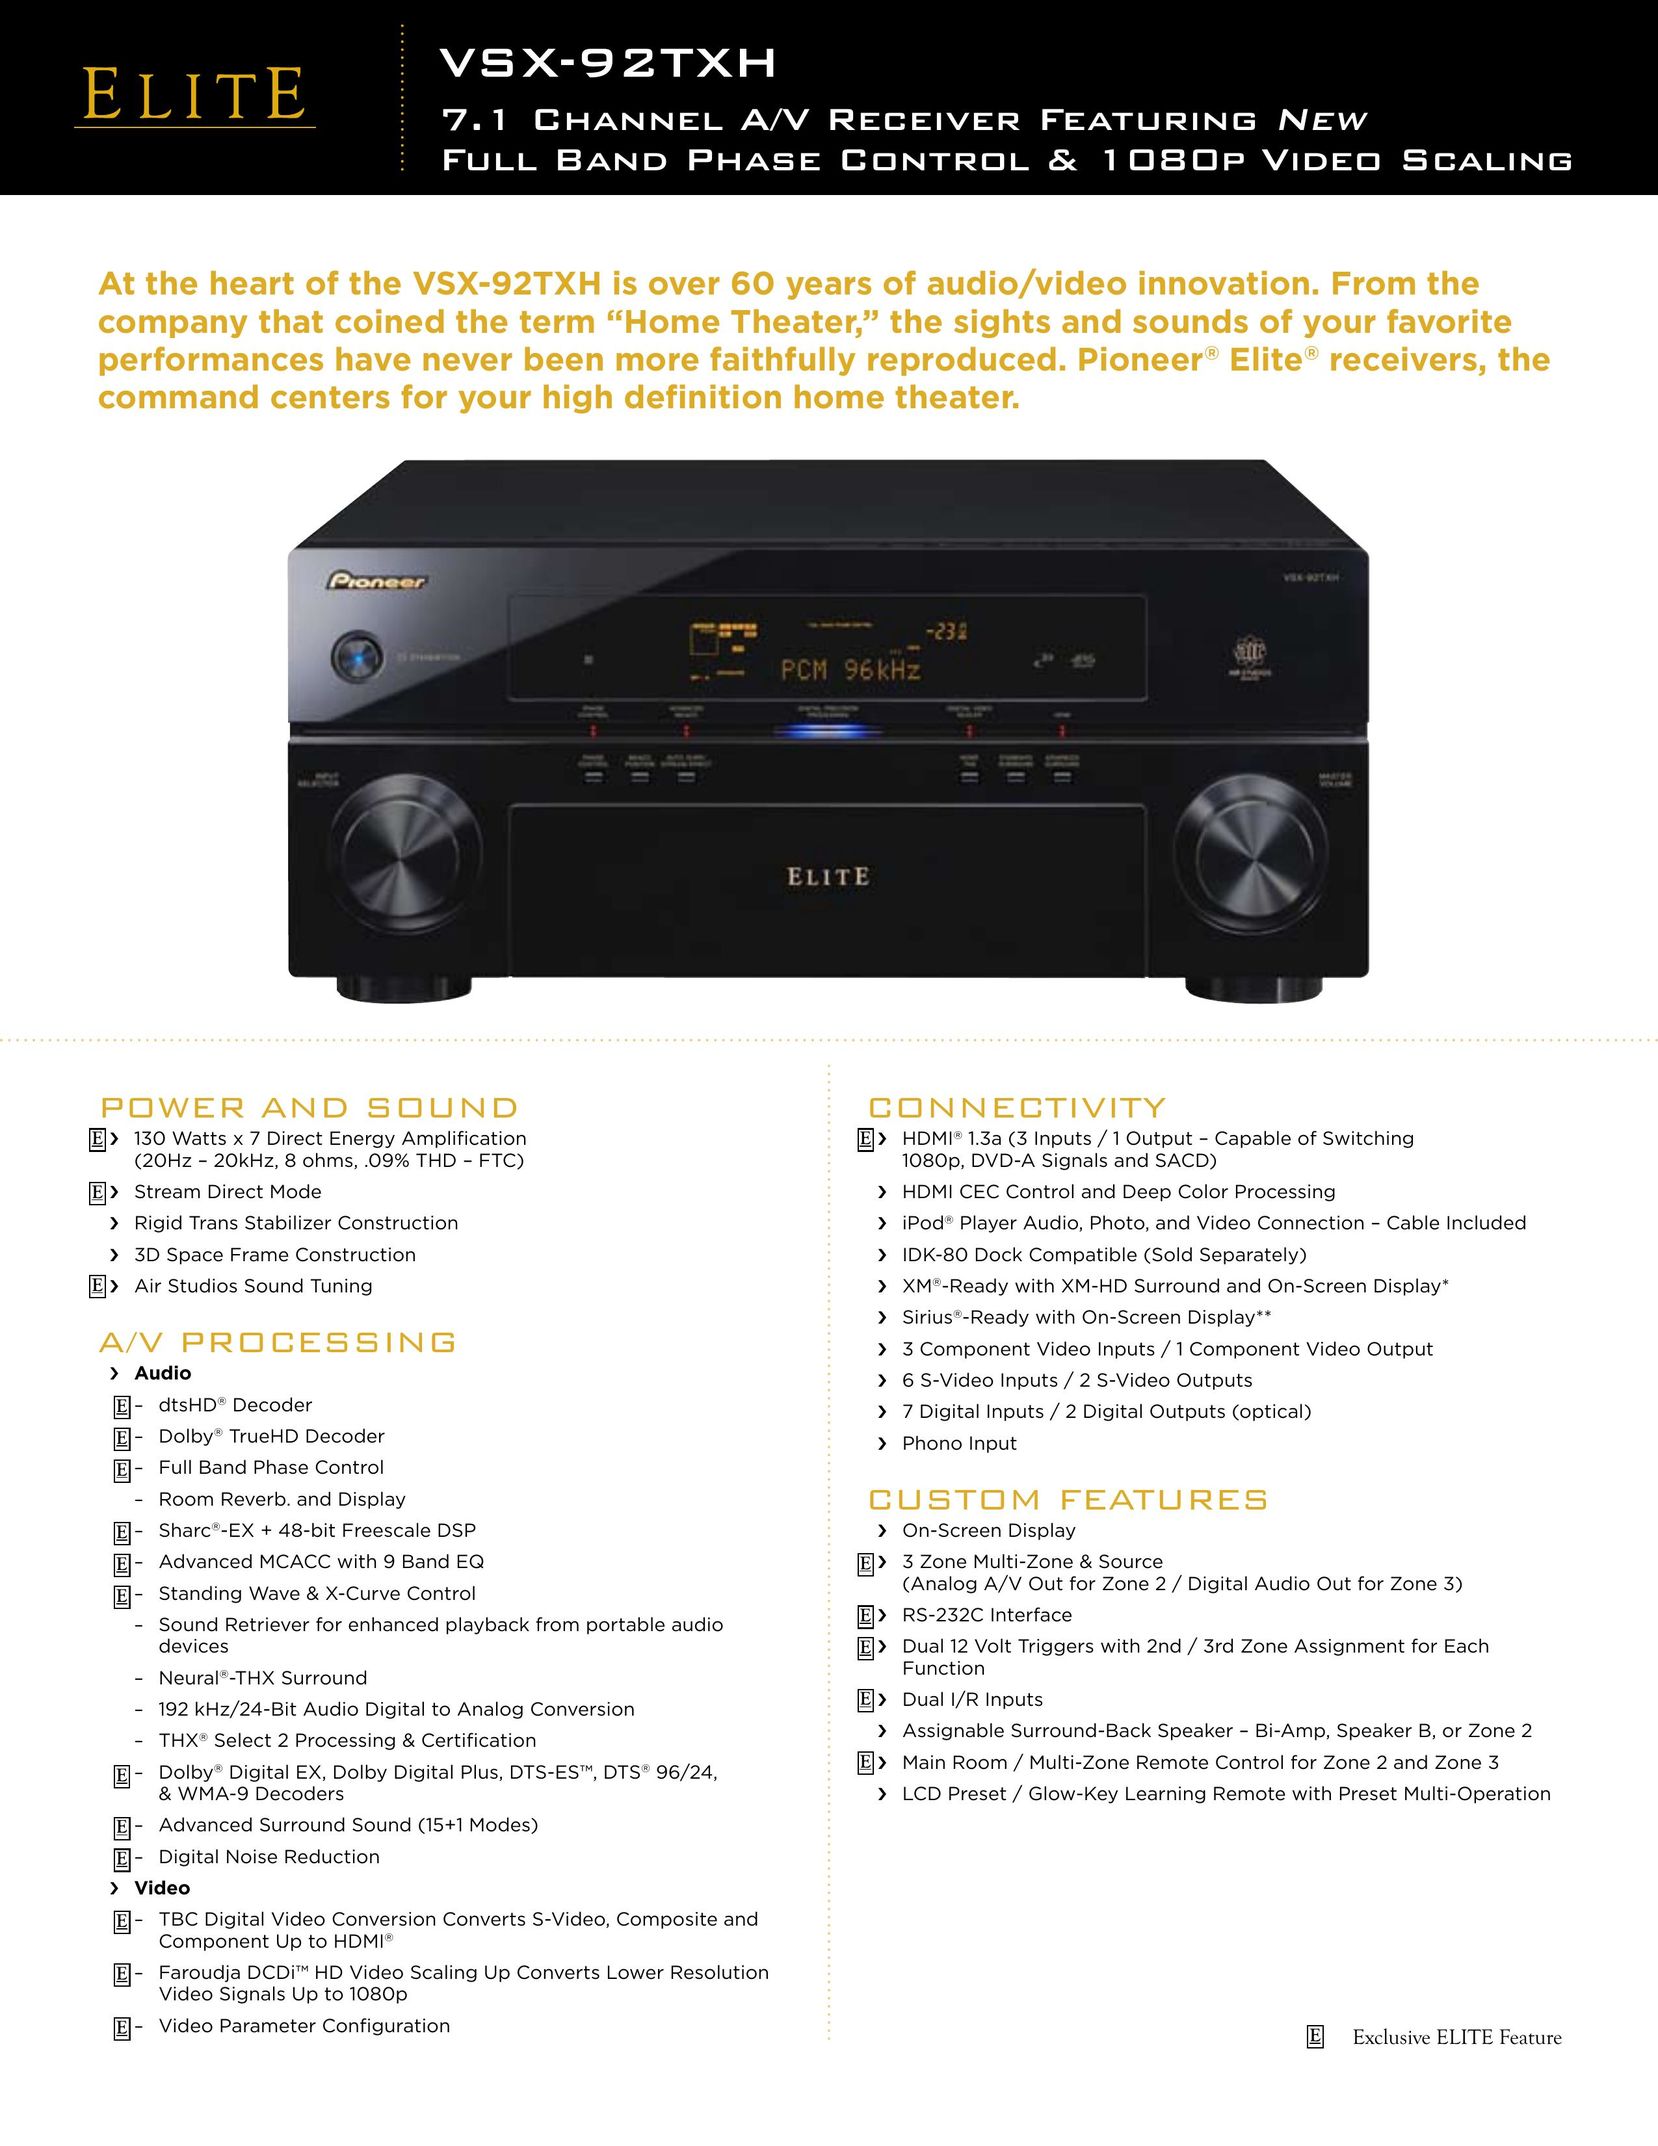 Elite VSX-92TXH Stereo Receiver User Manual